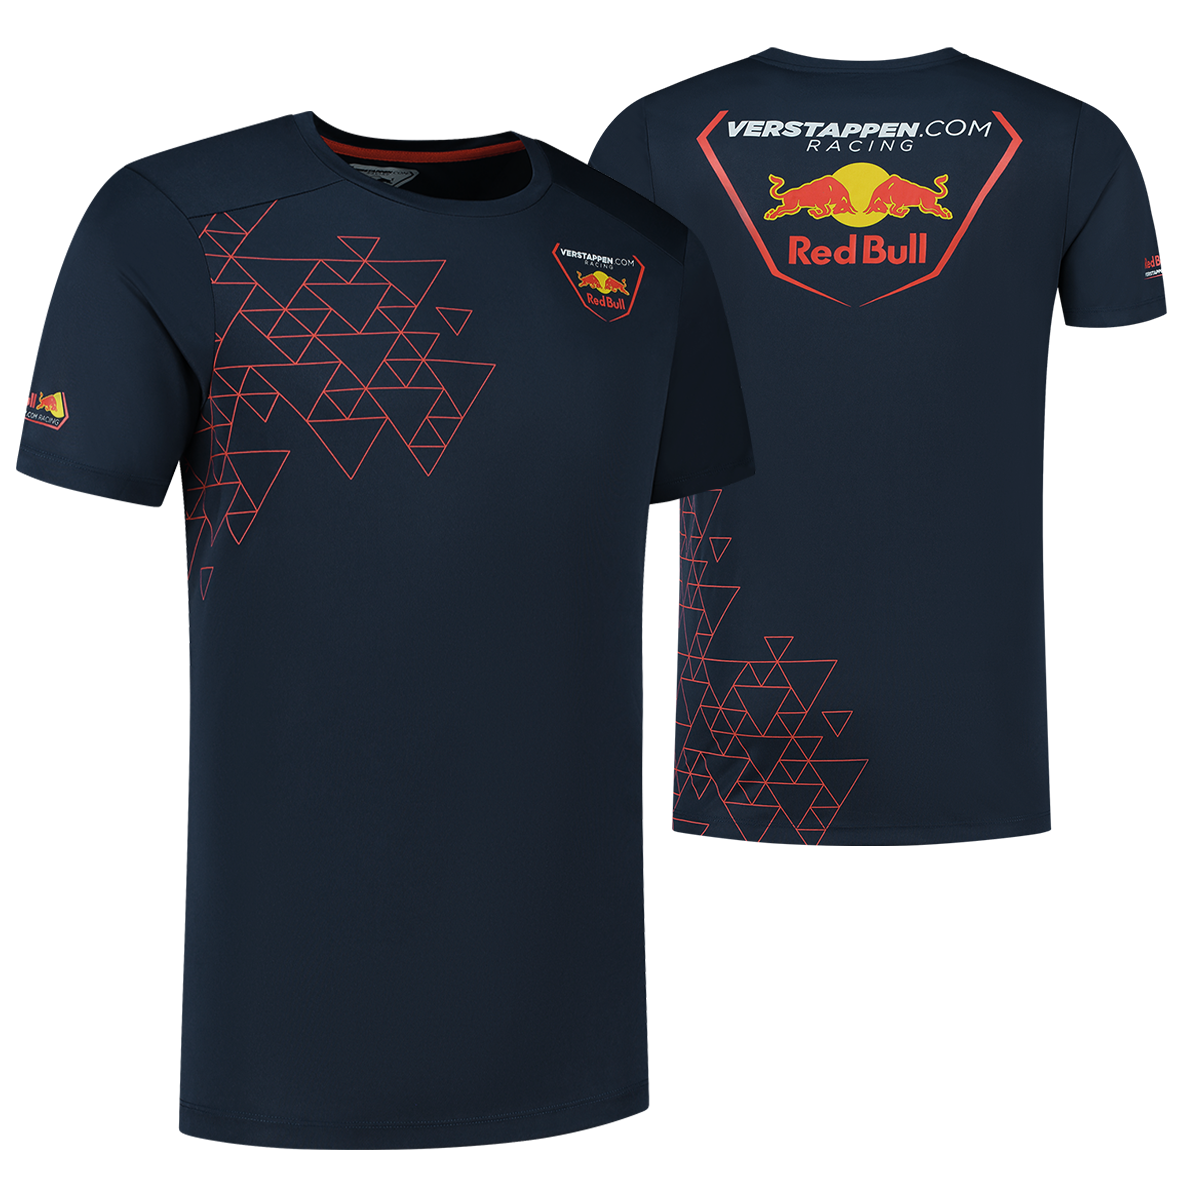 Verstappen.com Racing T-shirt - XXXL - Max Verstappen